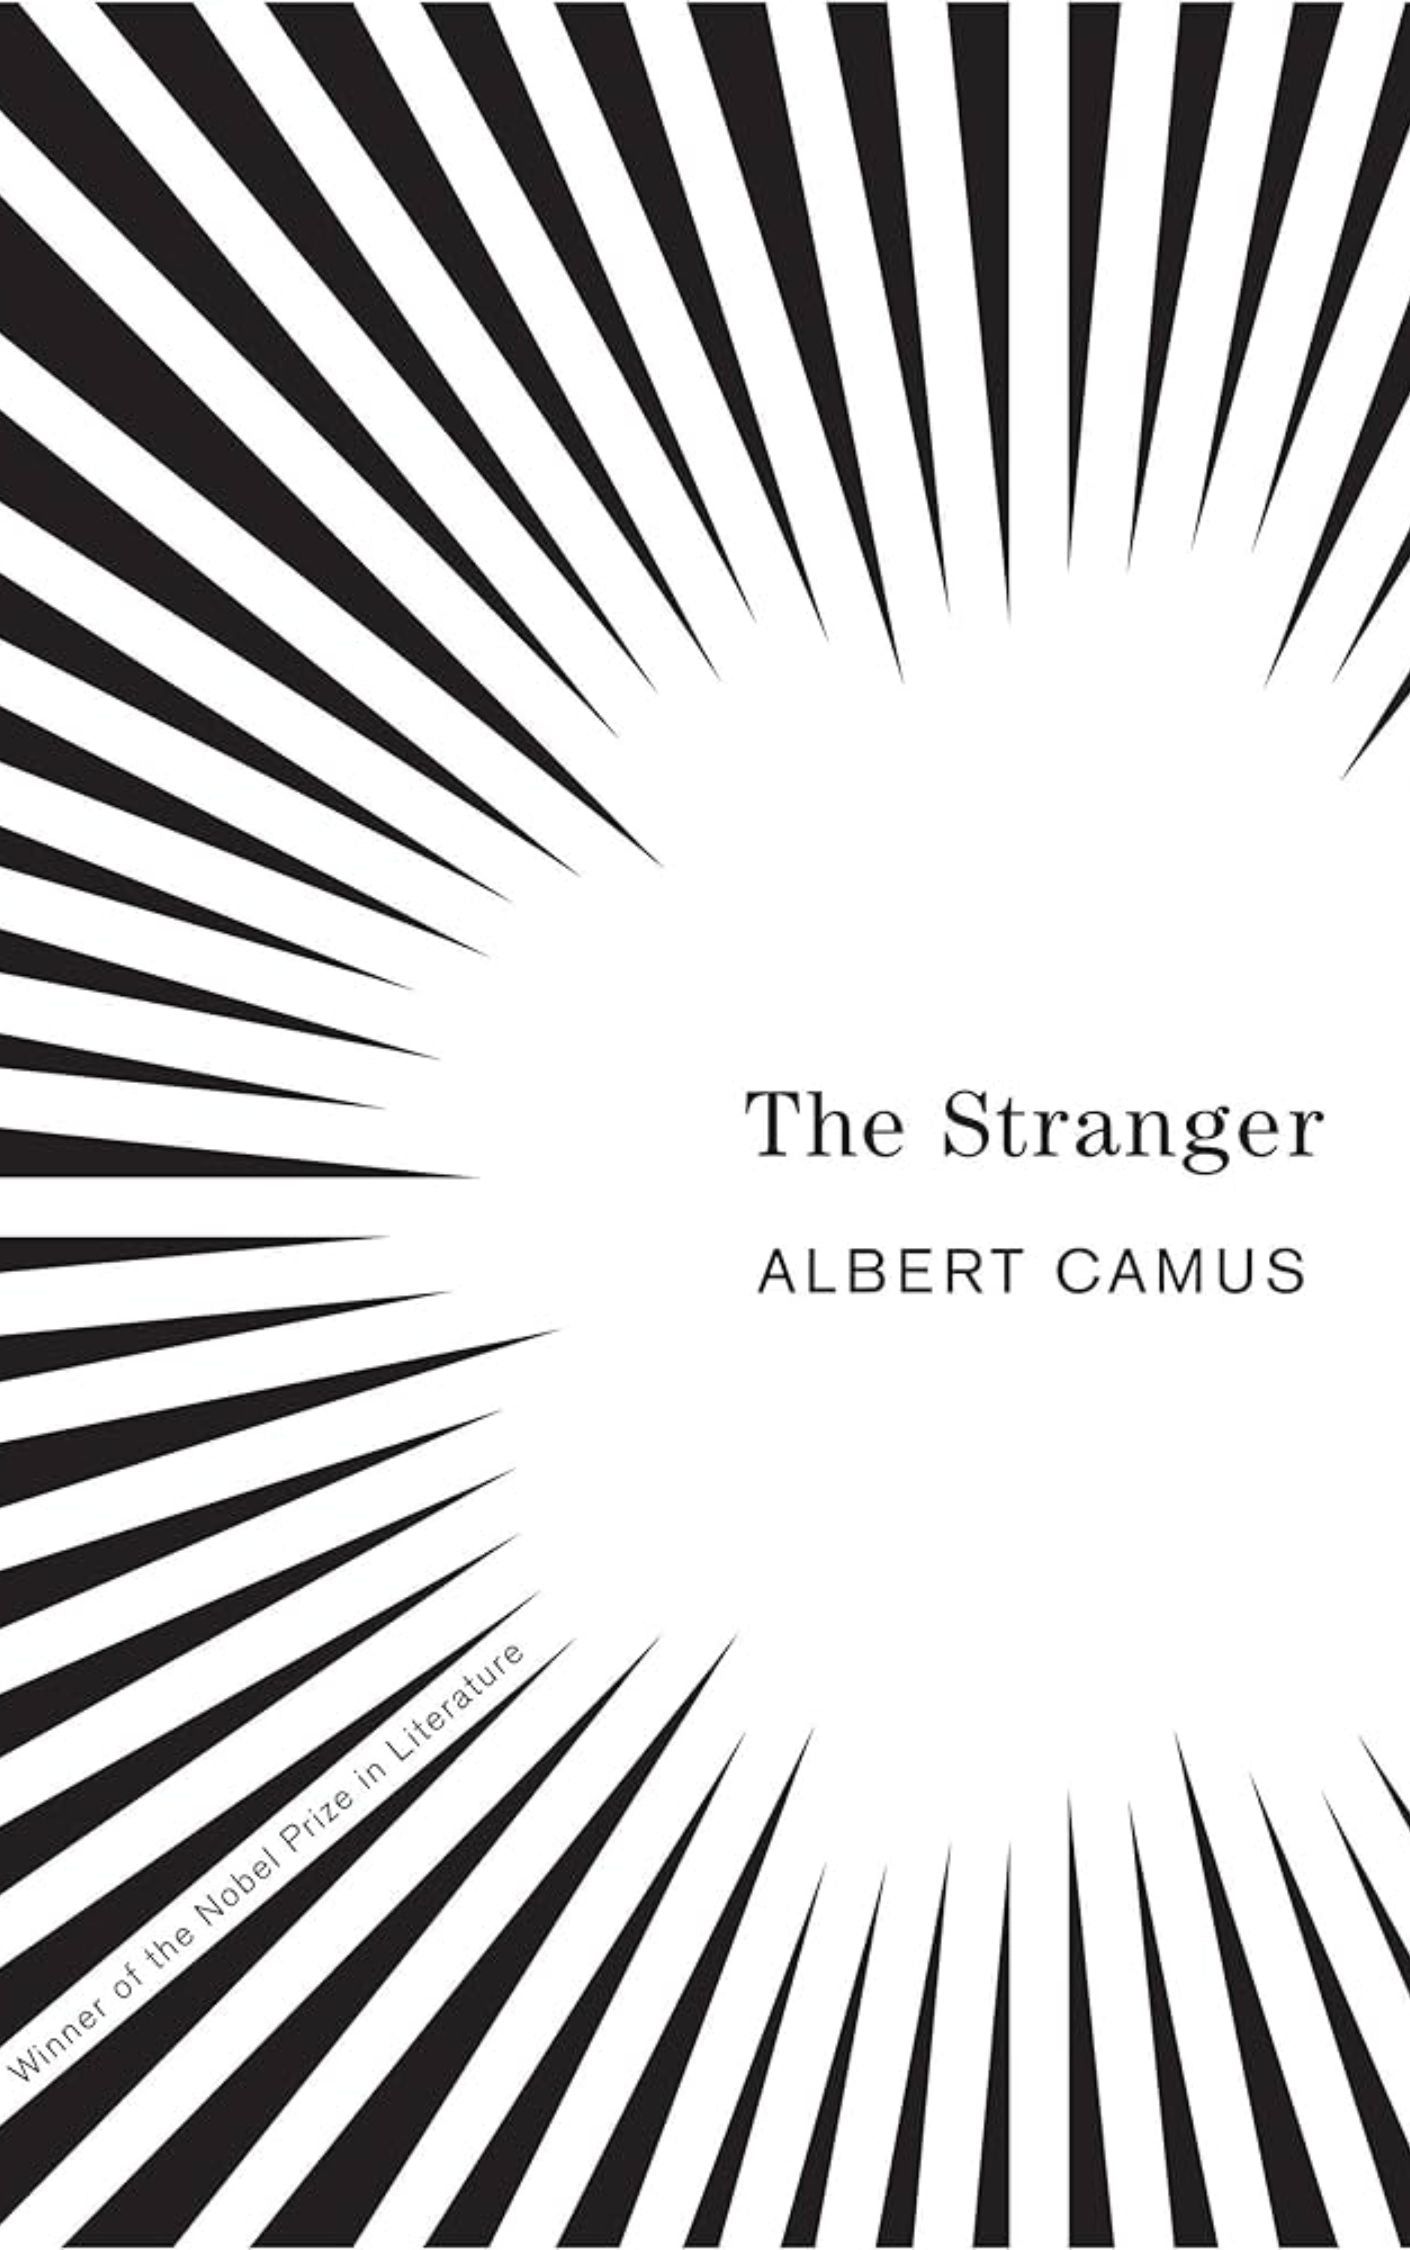 "The Stranger" by Albert Camus: Books For Women